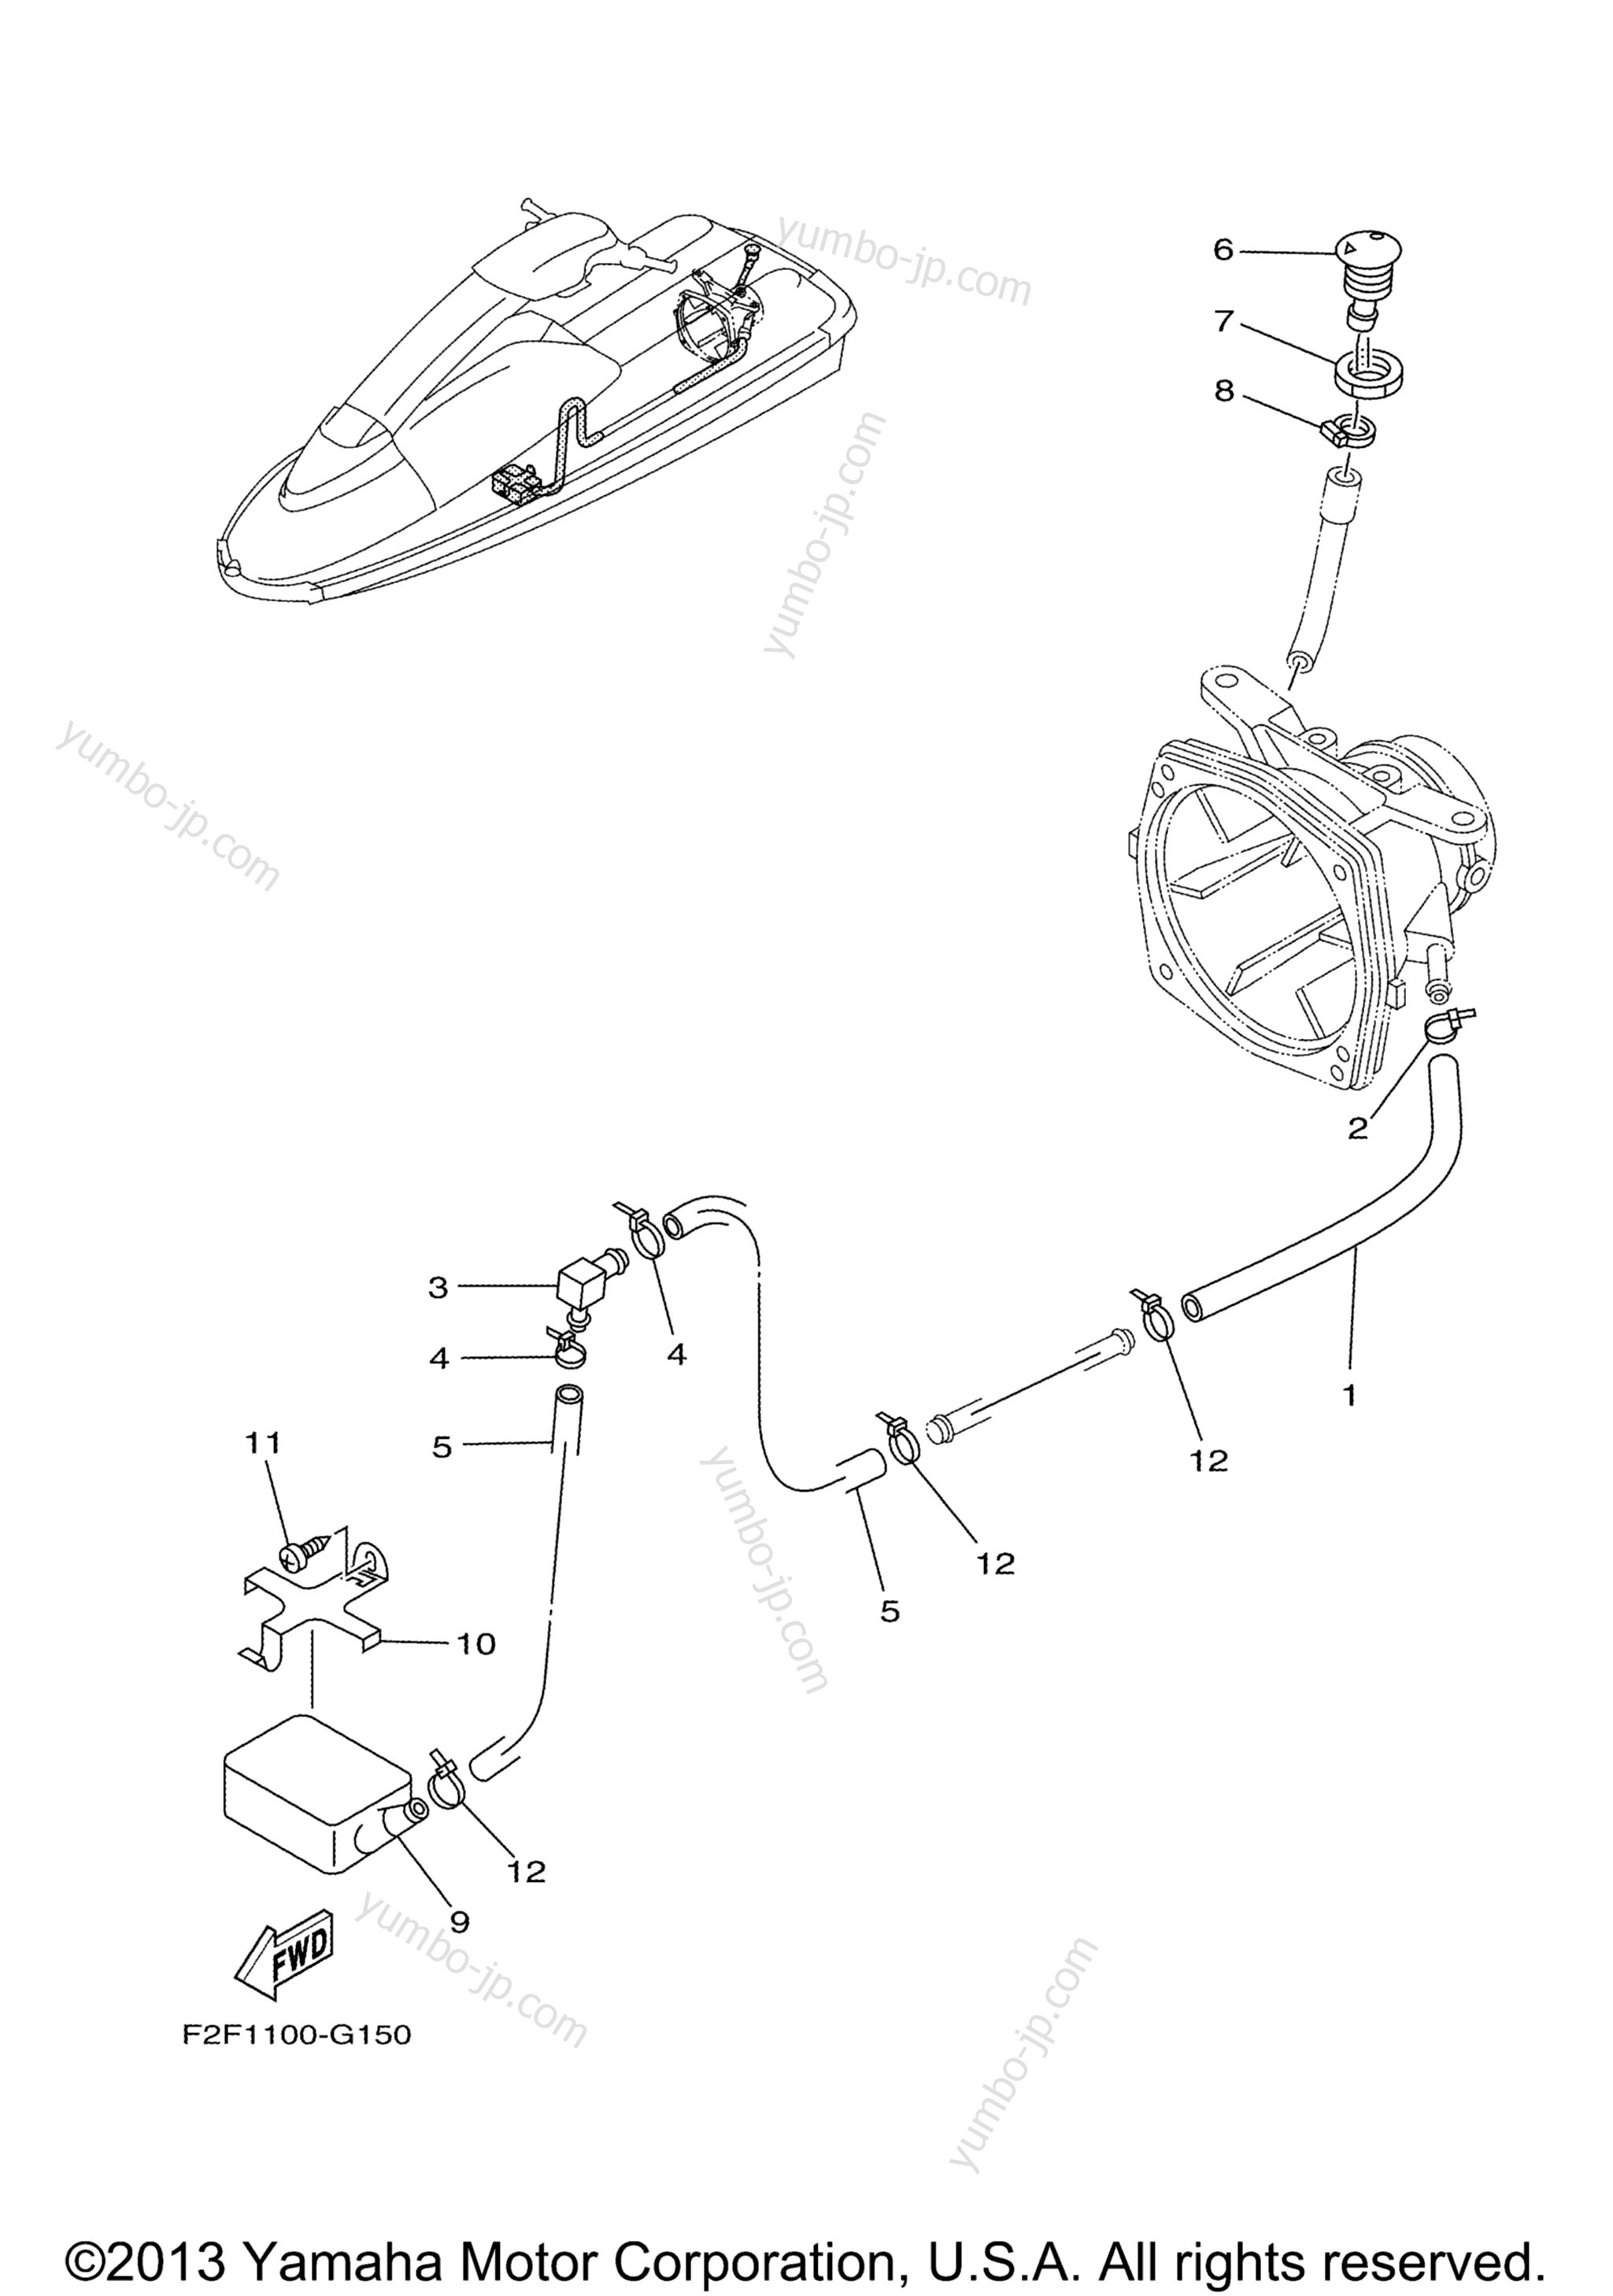 Hull & Deck для гидроциклов YAMAHA SUPER JET (SJ700BL) 2012 г.